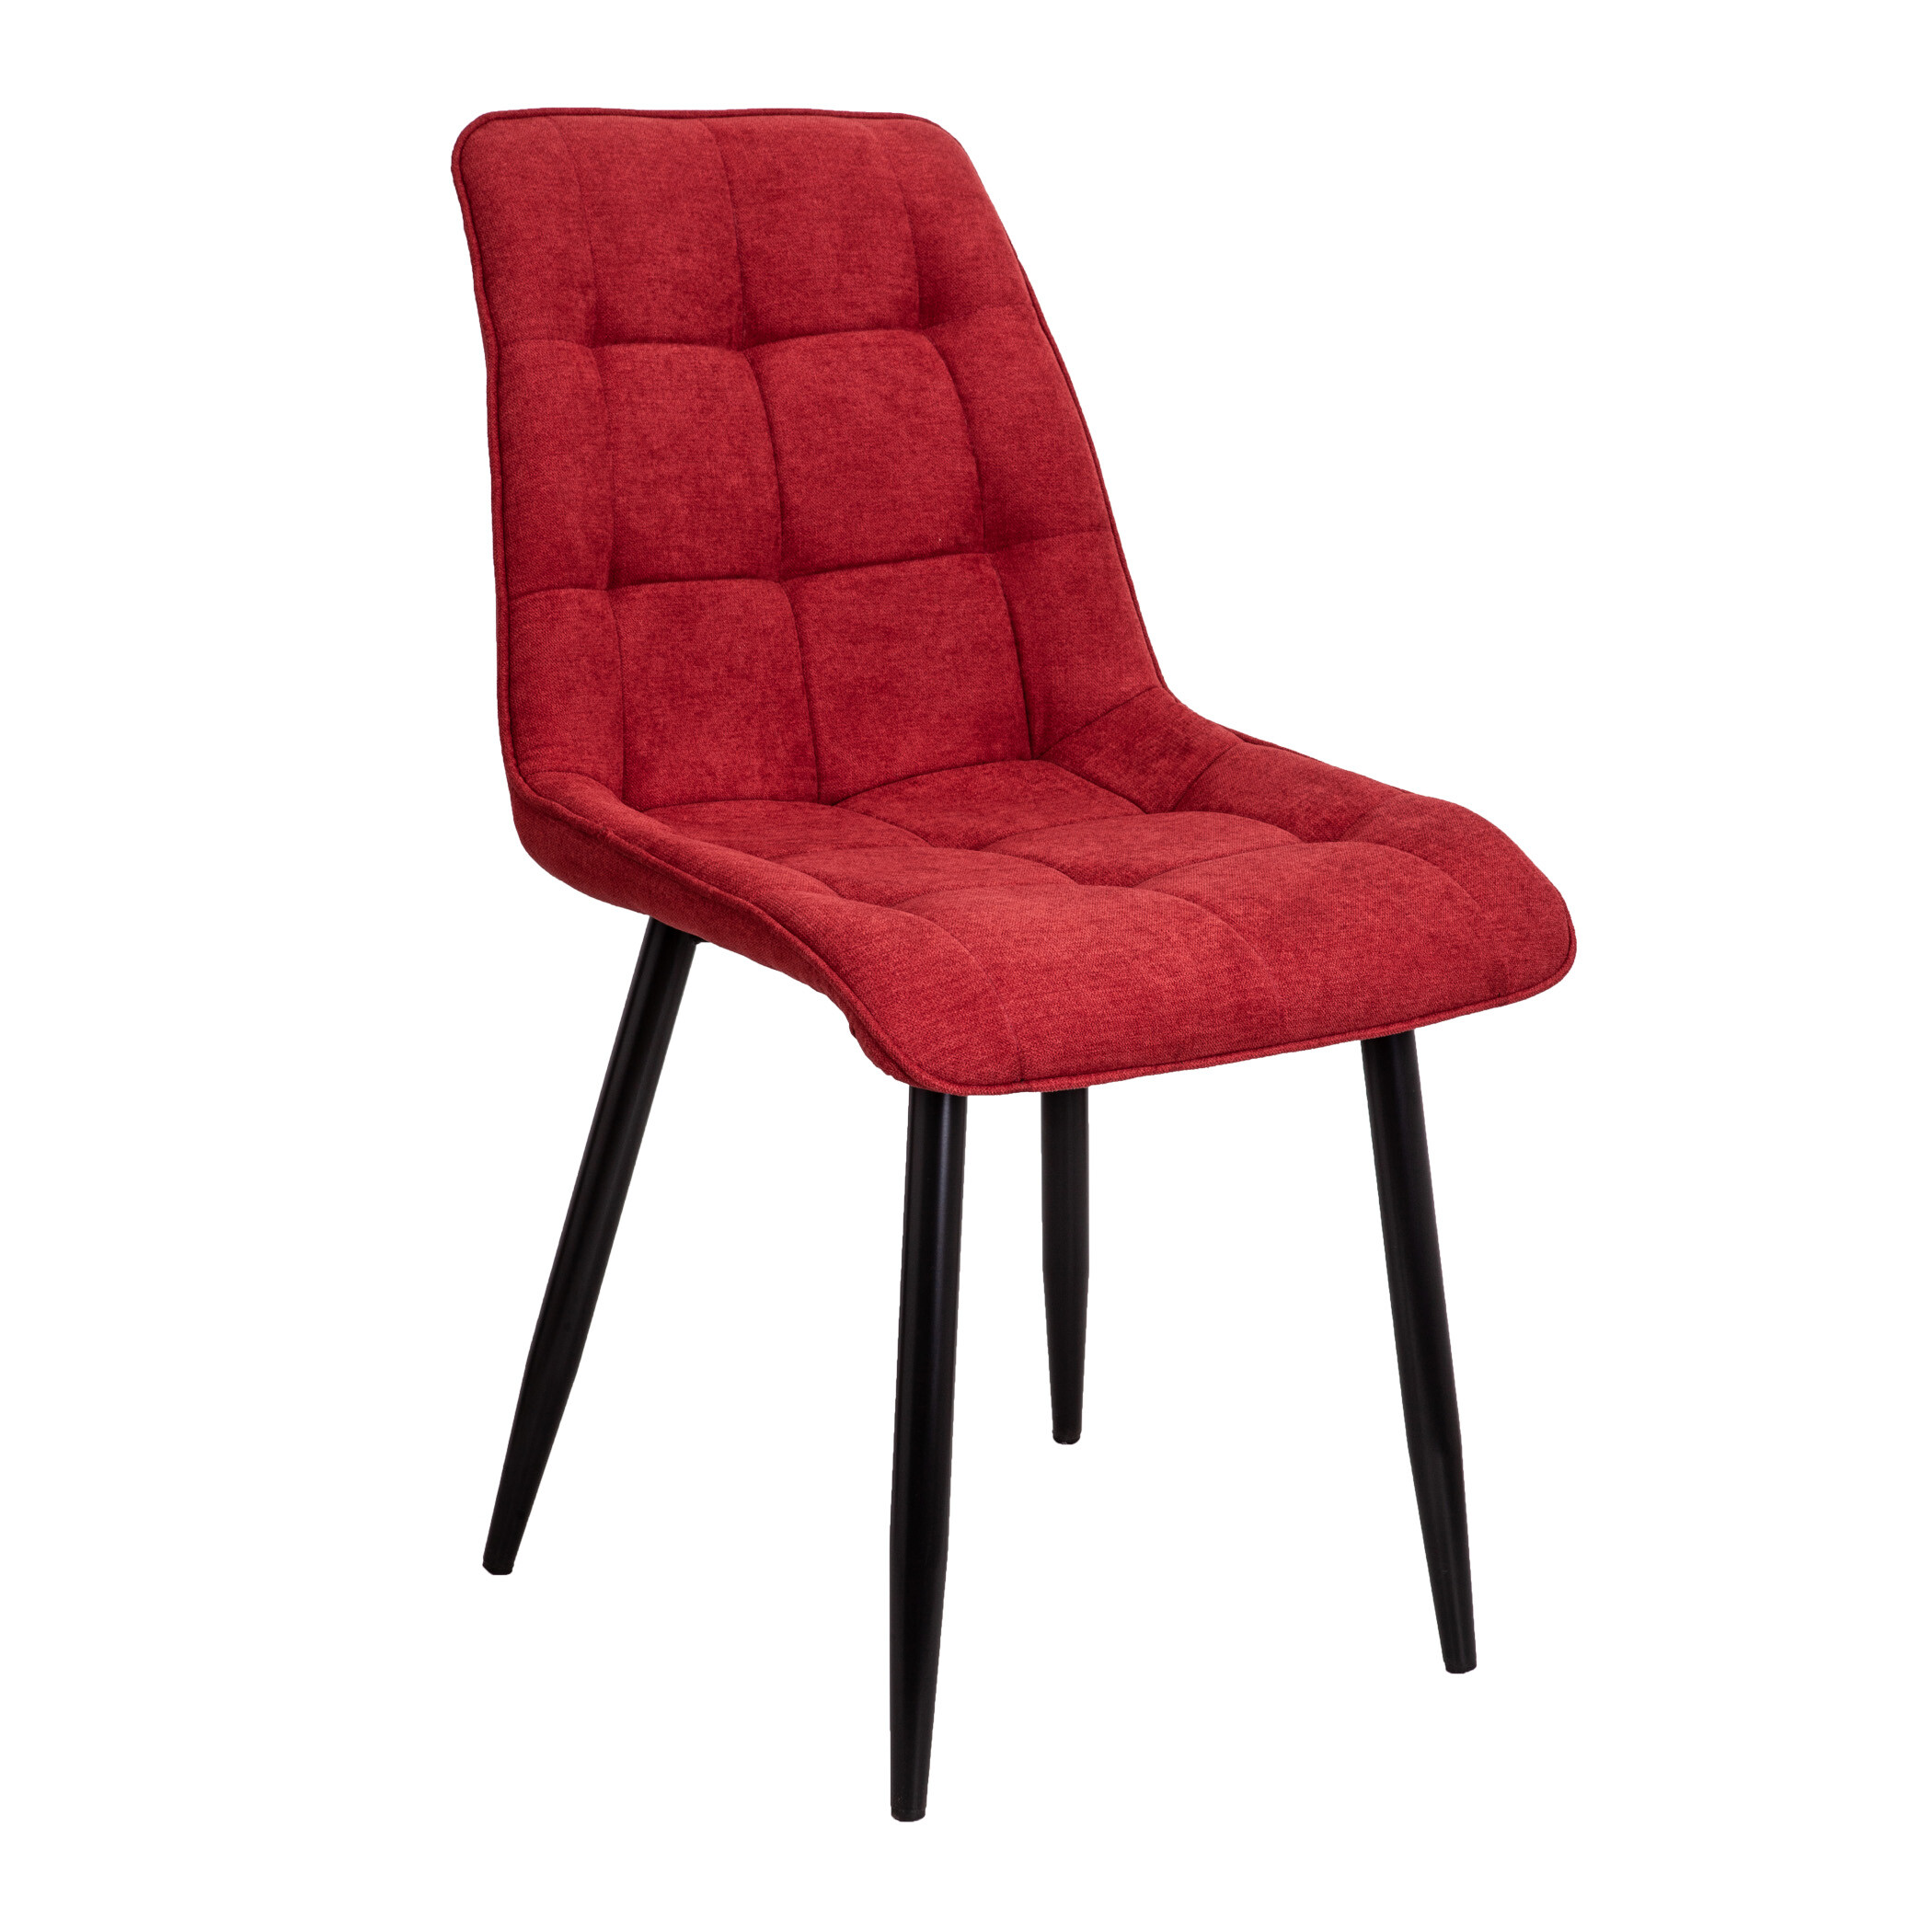 Обеденный стул мягкий красный FRED